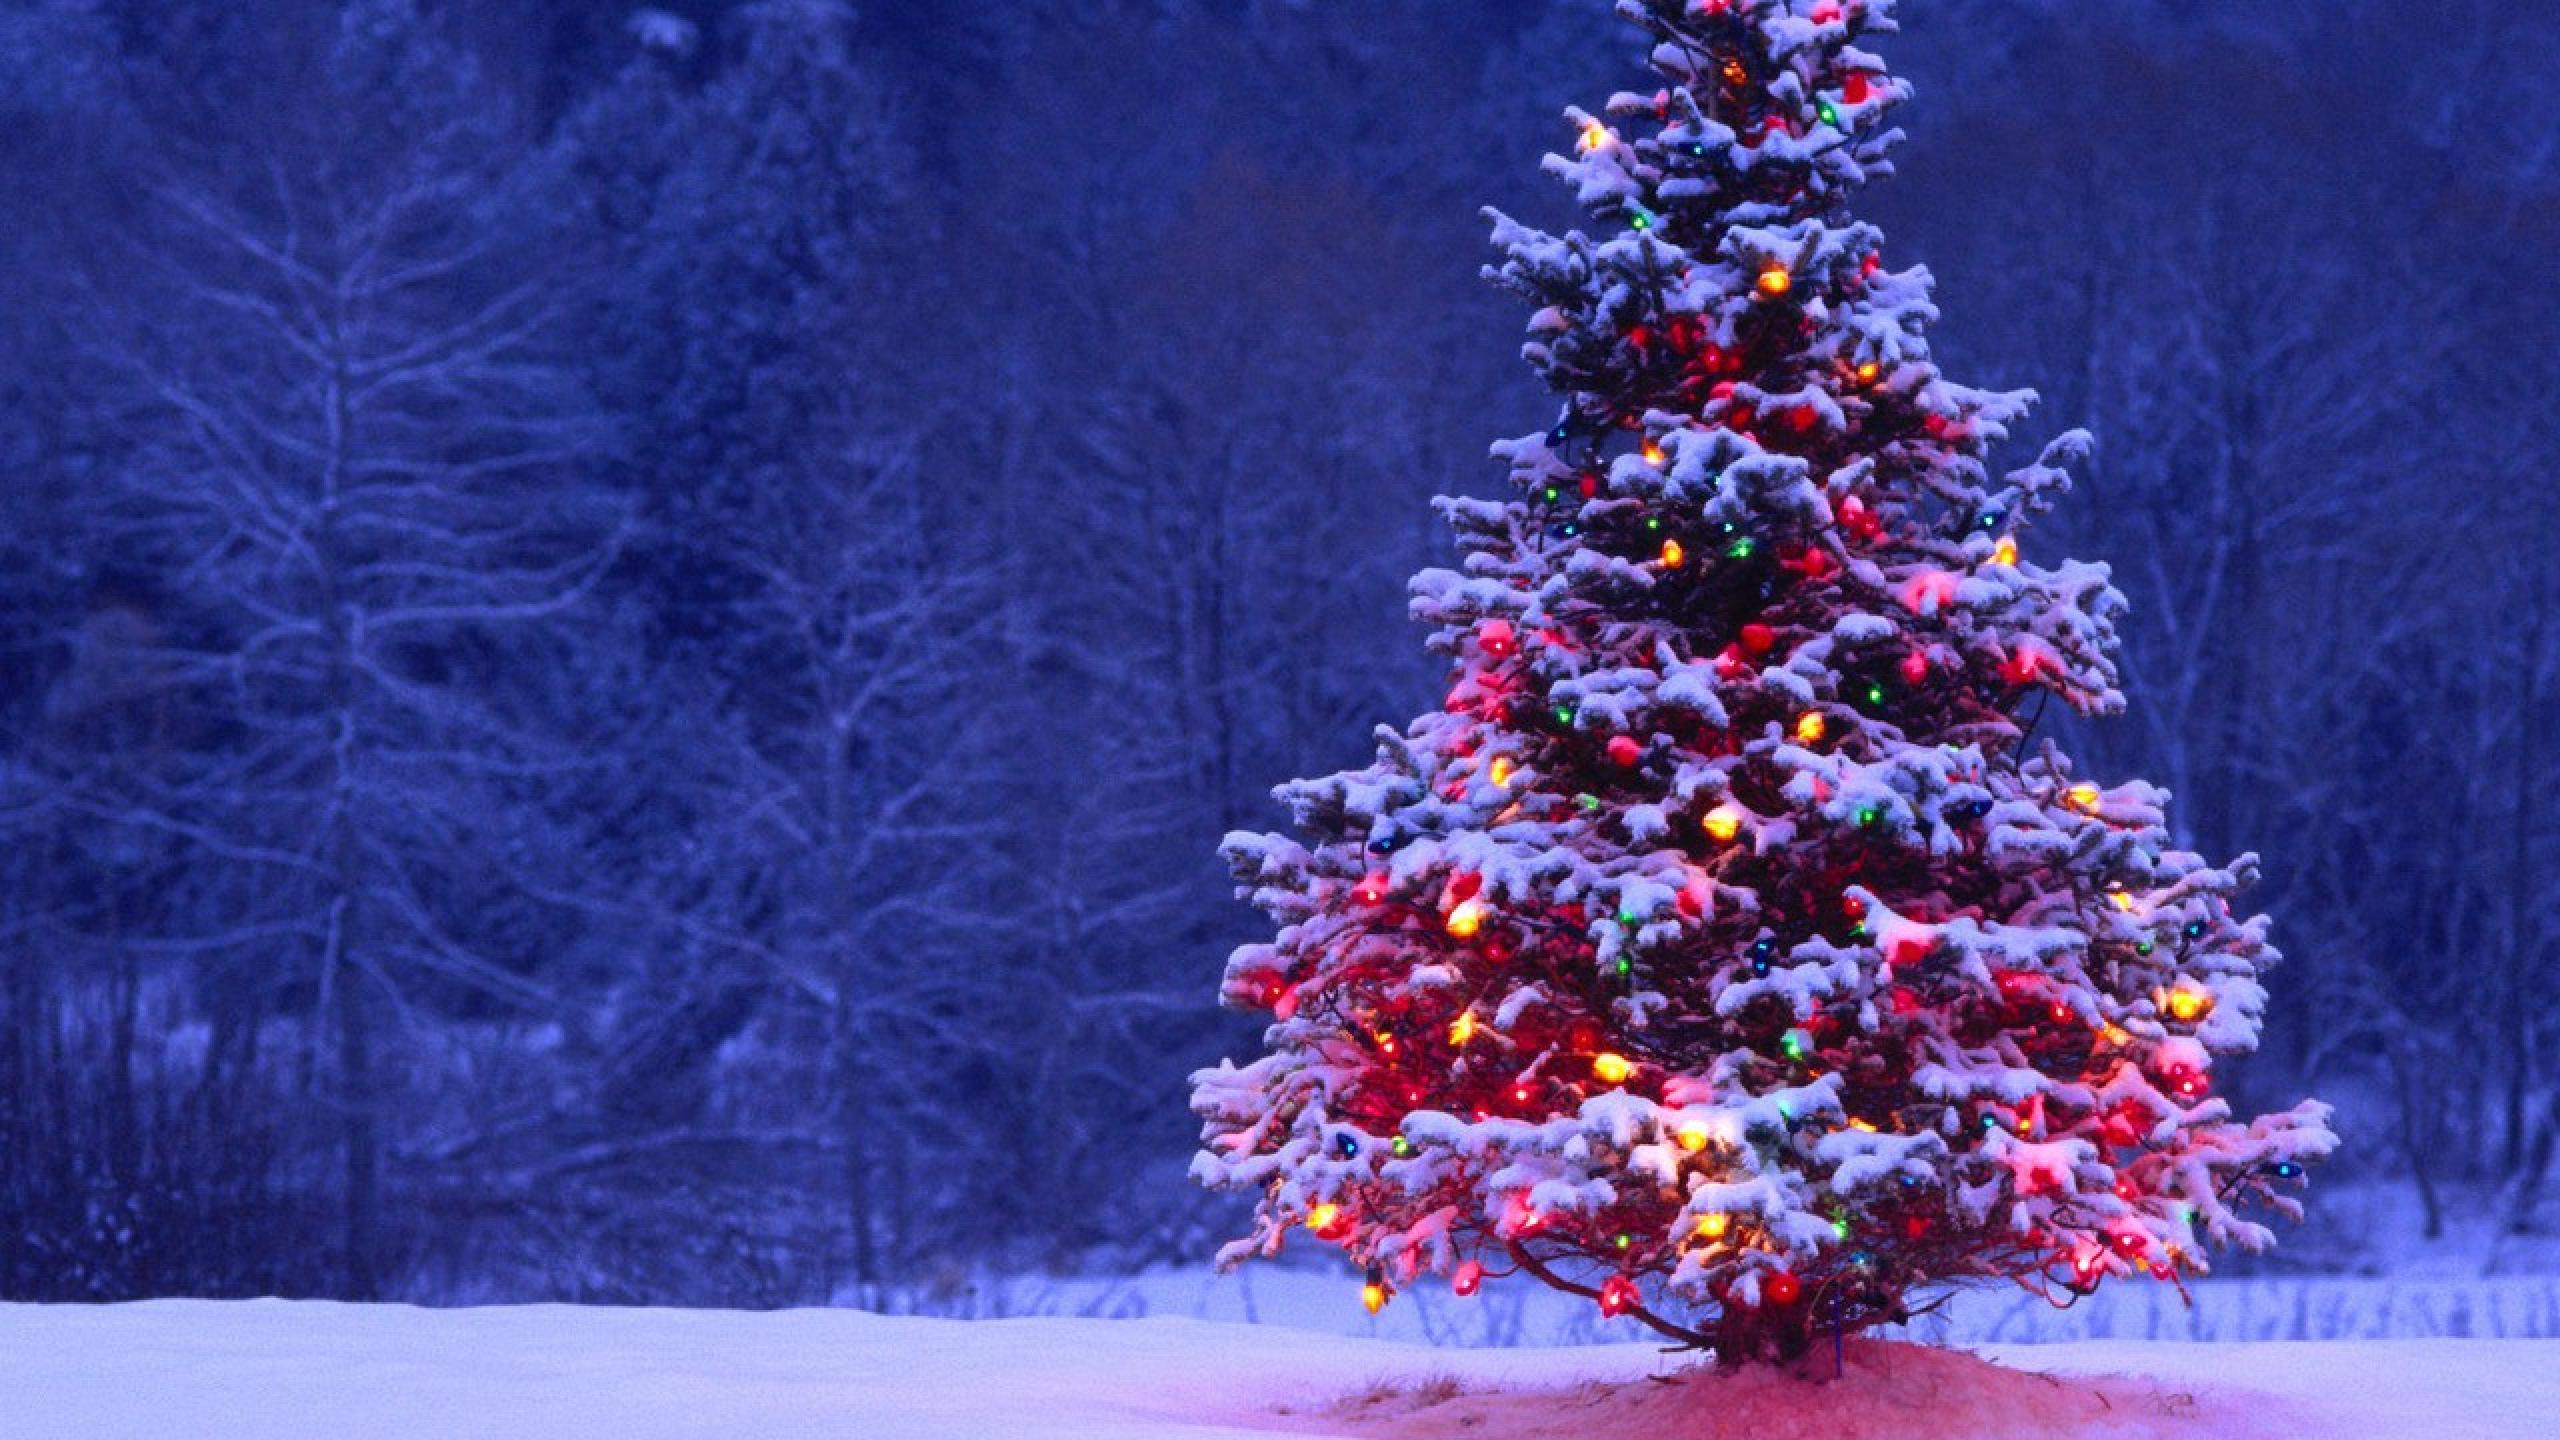 Hình nền mùa Giáng sinh với tuyết rơi che phủ cành cây Noel trở nên sống động và đẹp đến kinh ngạc. Hãy thưởng thức những hình ảnh tuyệt đẹp này và cảm nhận sự ấm áp của mùa lễ hội.